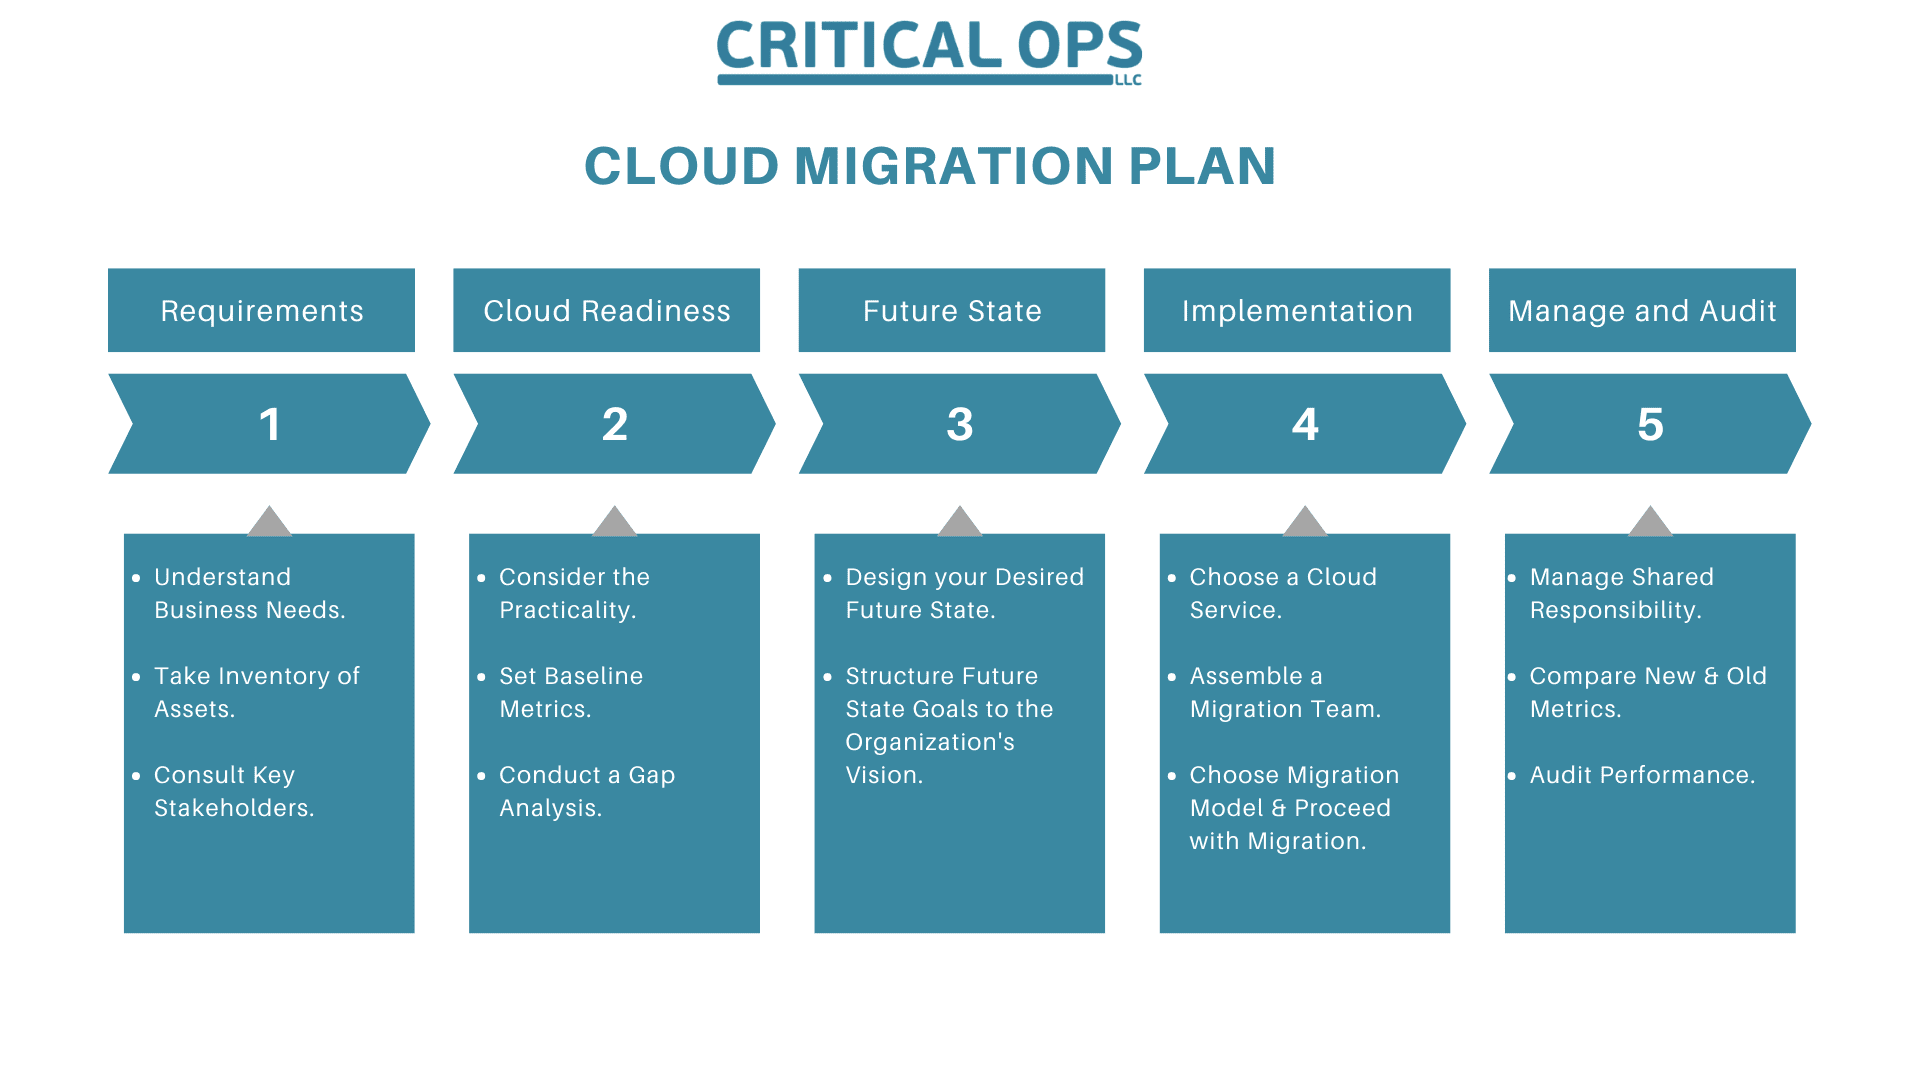 A cloud migration plan has 5 steps